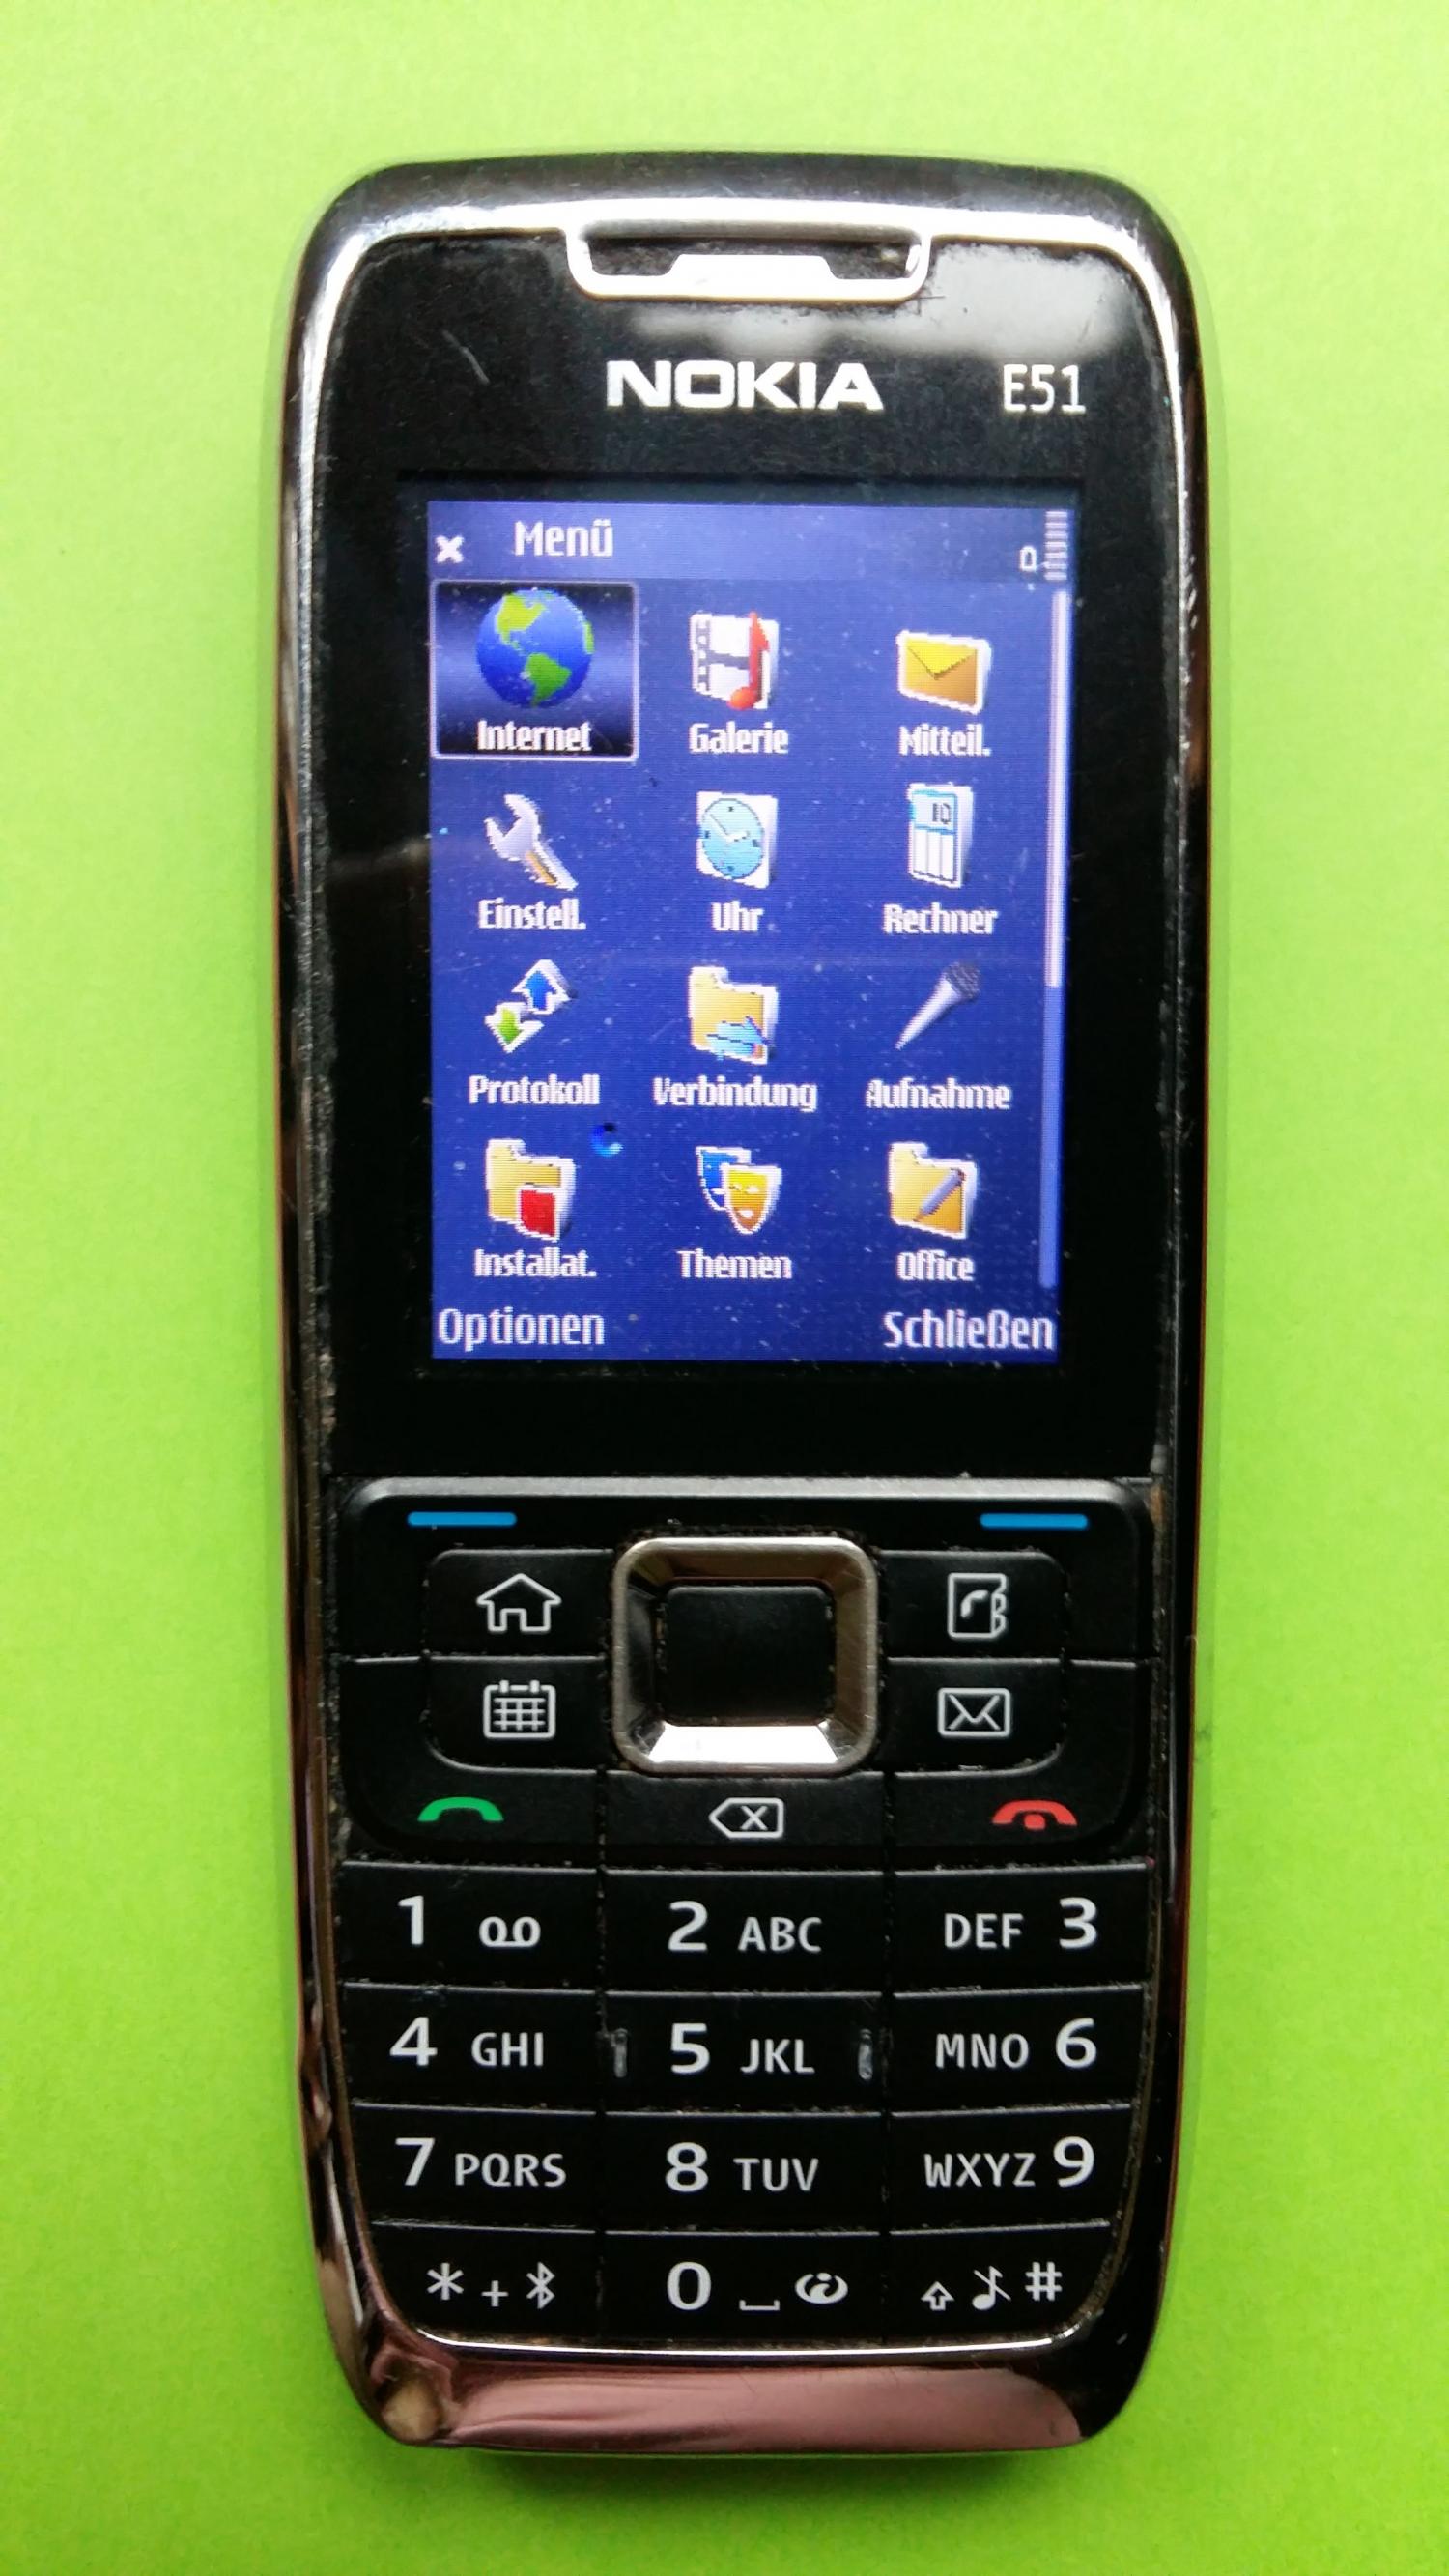 image-7339162-Nokia E51-1 (2)1.jpg